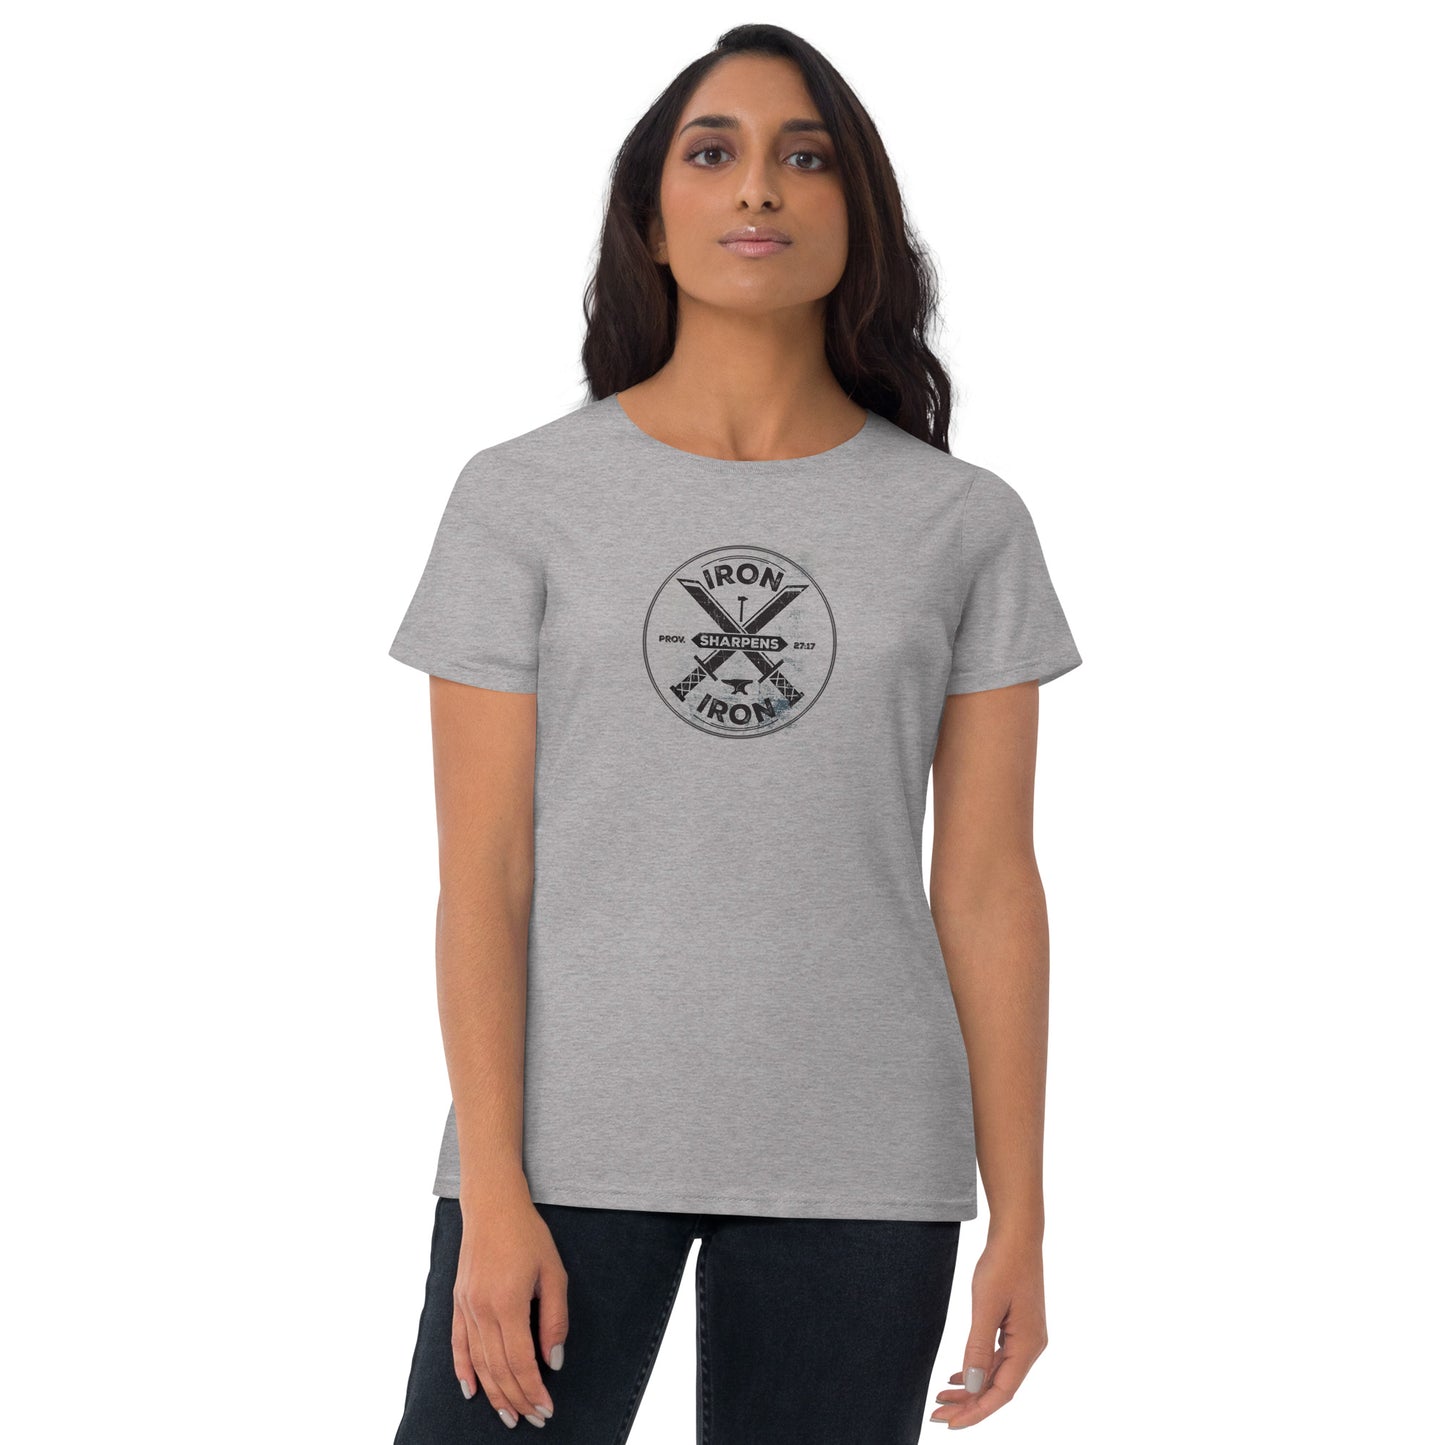 Iron Sharpens Iron - Women's short sleeve t-shirt